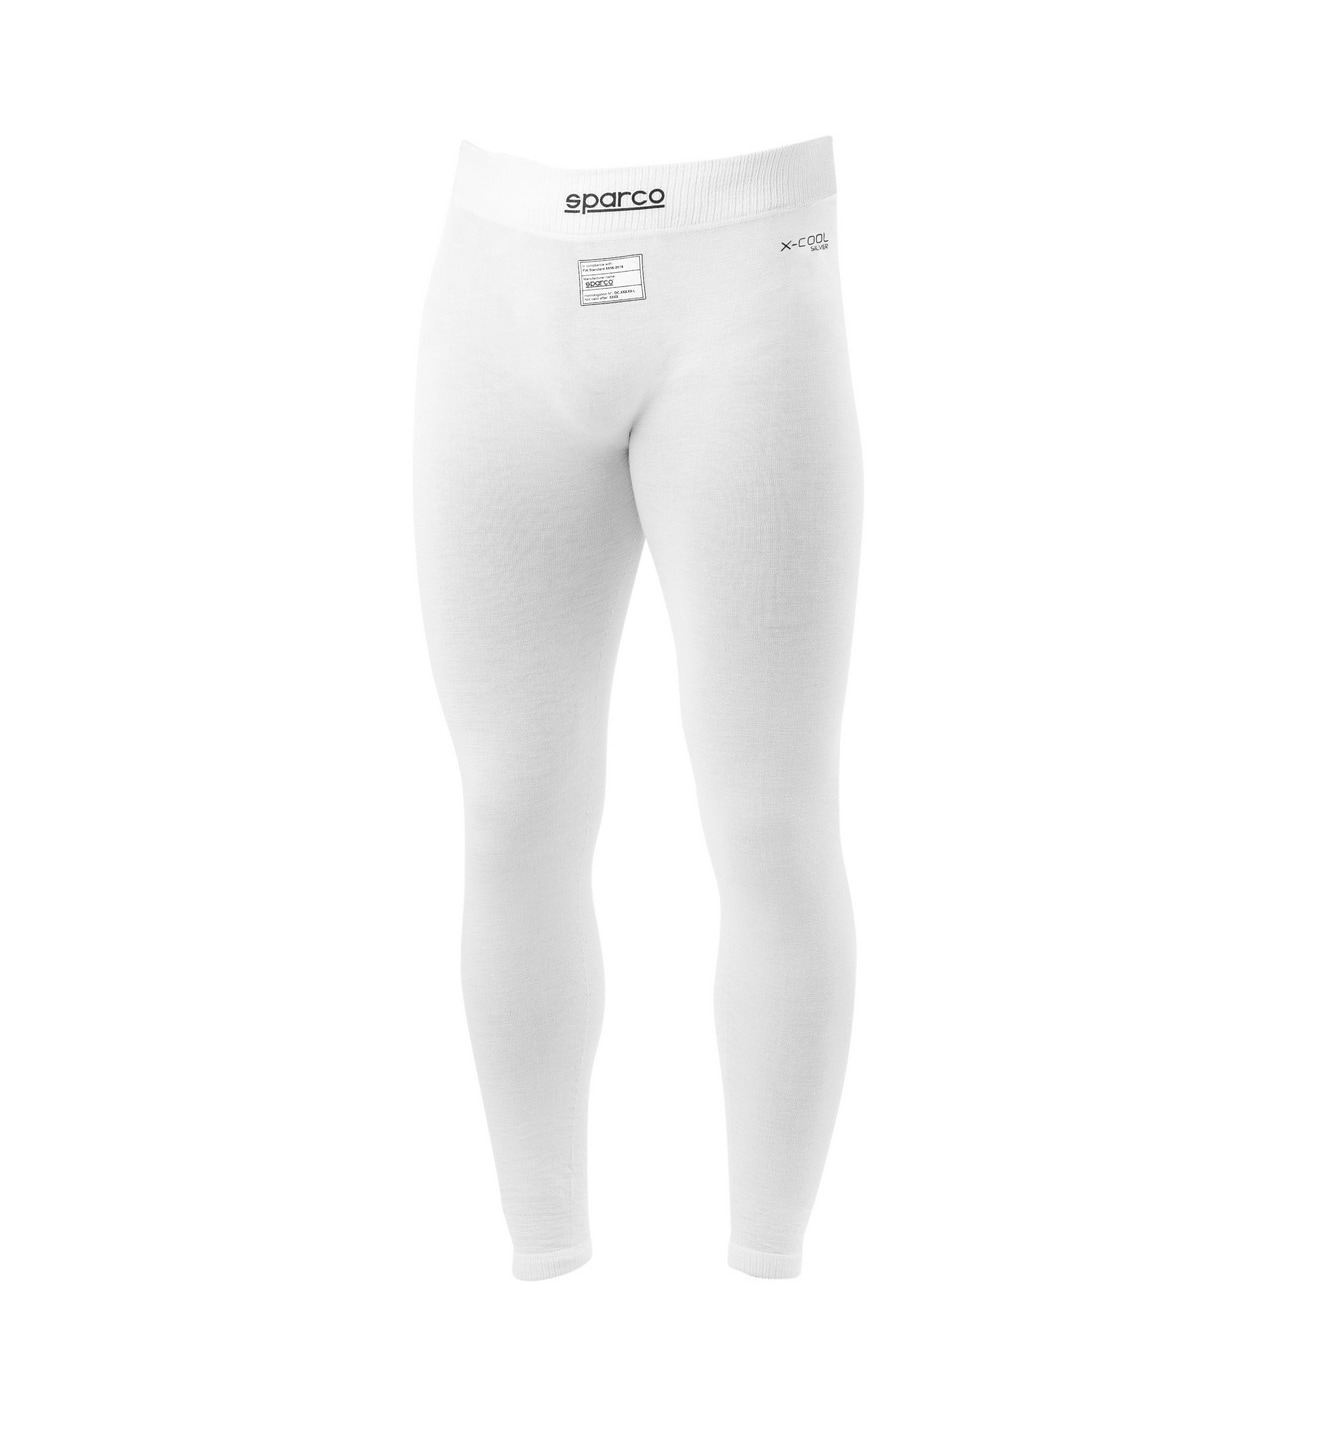 Race Underwear Bottom RW-10 White XS